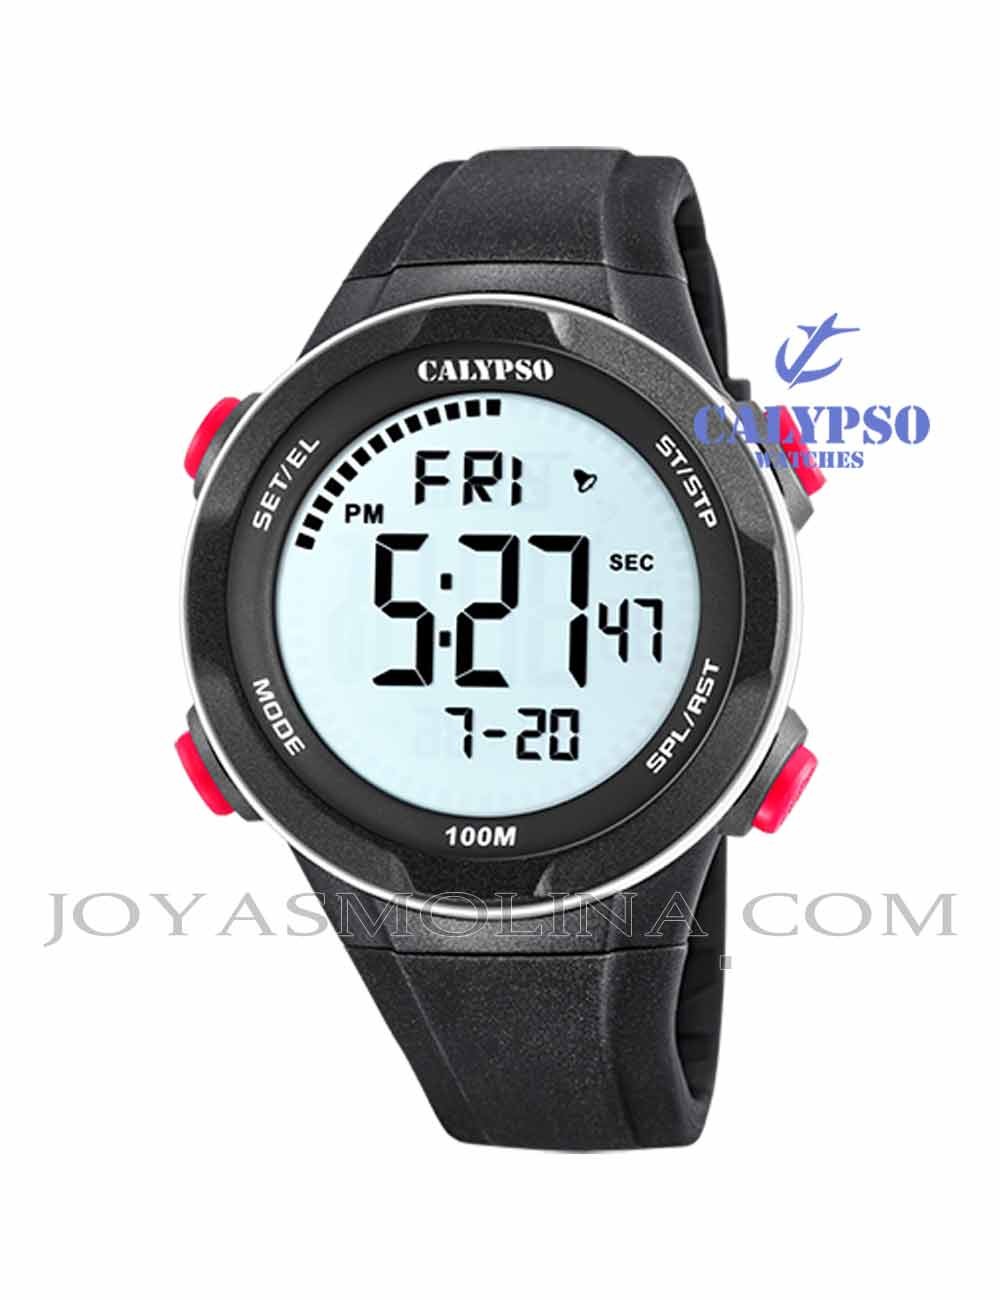 Reloj hombre Calypso digital K5780-2